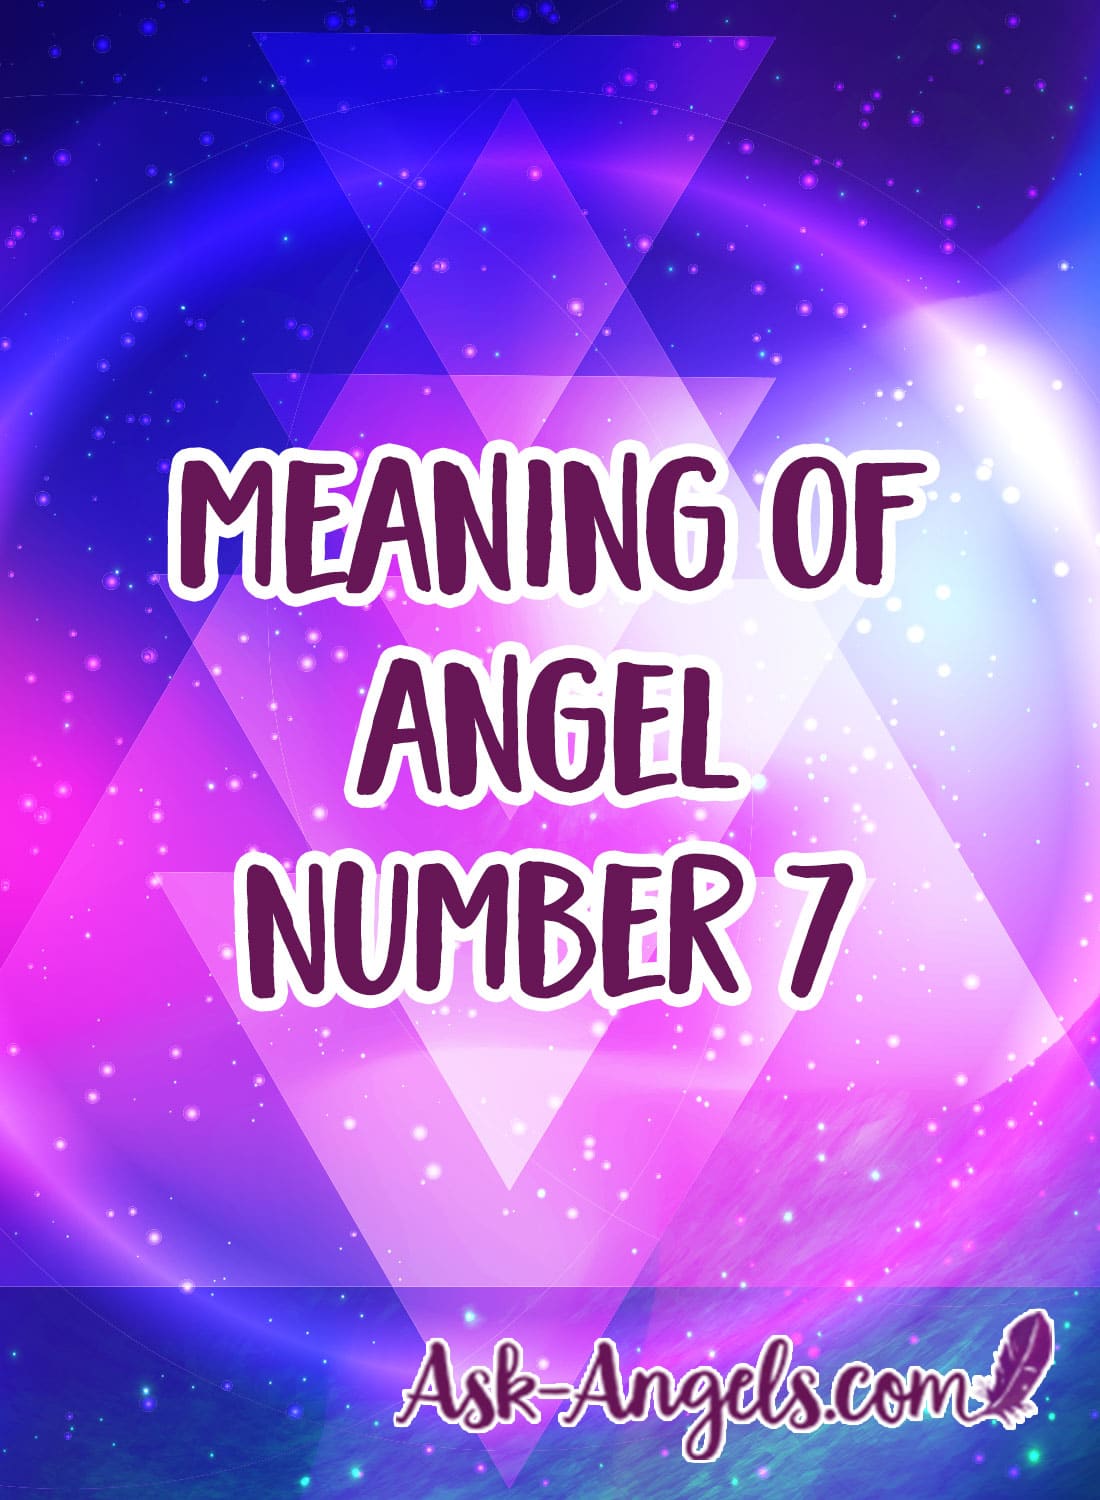 význam andělské číslo 7